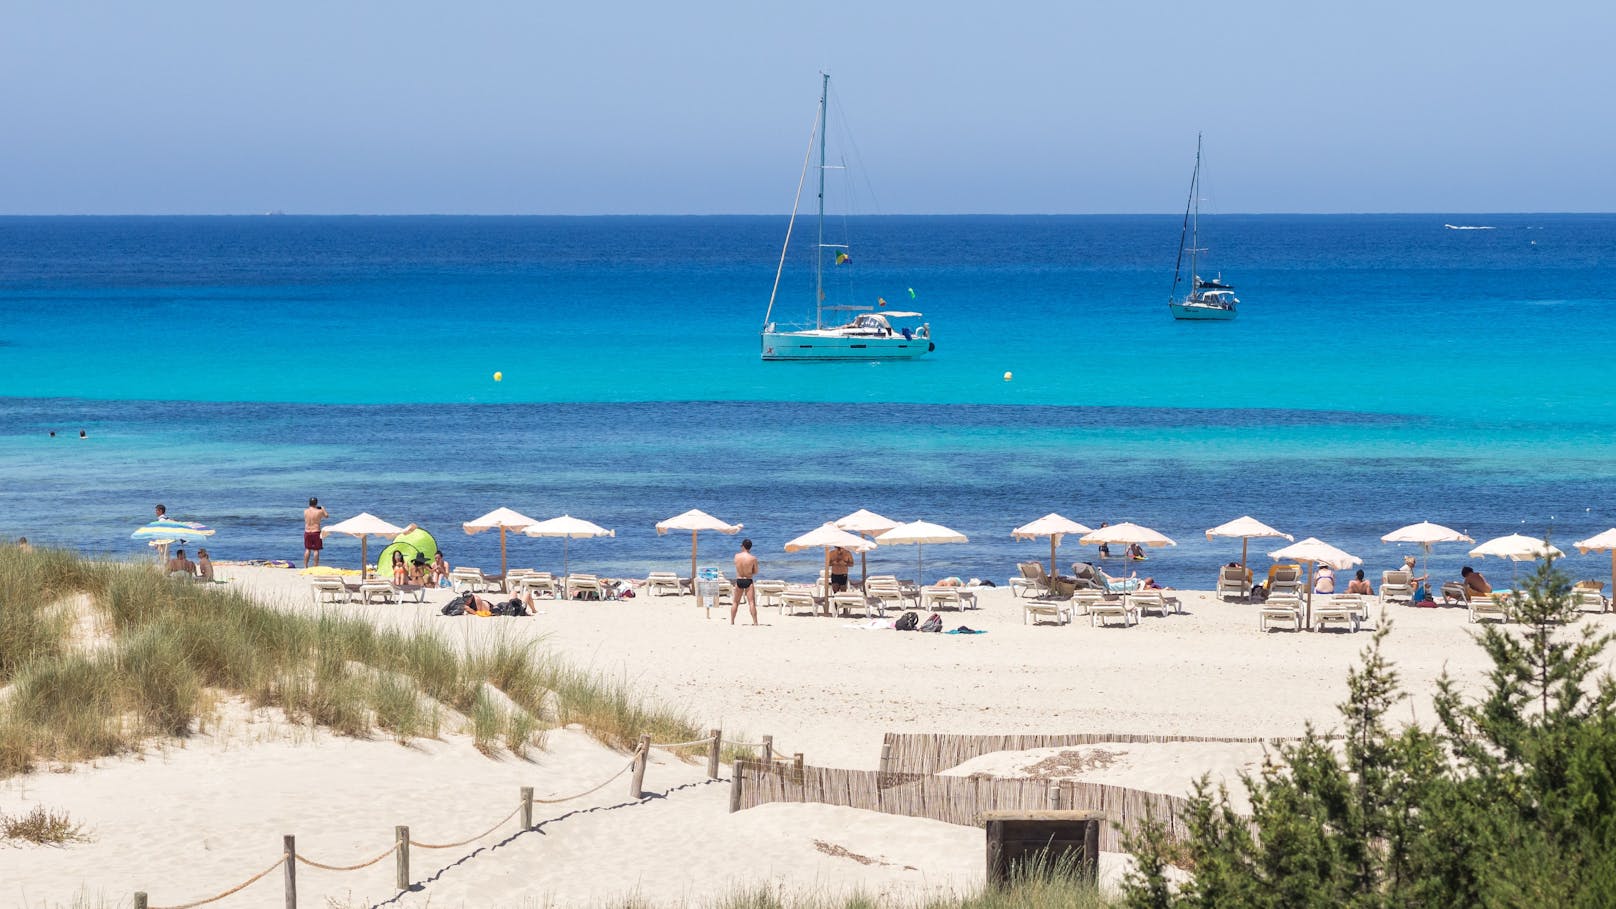 <strong>Playa de Ses Illetes, Formentera, Spanien:&nbsp;</strong>Die kleine Schwester der Partyinsel Ibiza ist bekannt für ihr kristallklares Wasser und ihre traumhaften Strände, von denen einige auch für FKK-Liebhaber geeignet sind. Einer der bekanntesten und gleichzeitig schönsten Strände der Insel ist die Playa des Ses Illetes. Badegäste lassen am naturbelassenen Traumstrand entspannt die Hüllen fallen und genießen die atemberaubende Aussicht auf Ibiza und die Insel Es Vedrá.